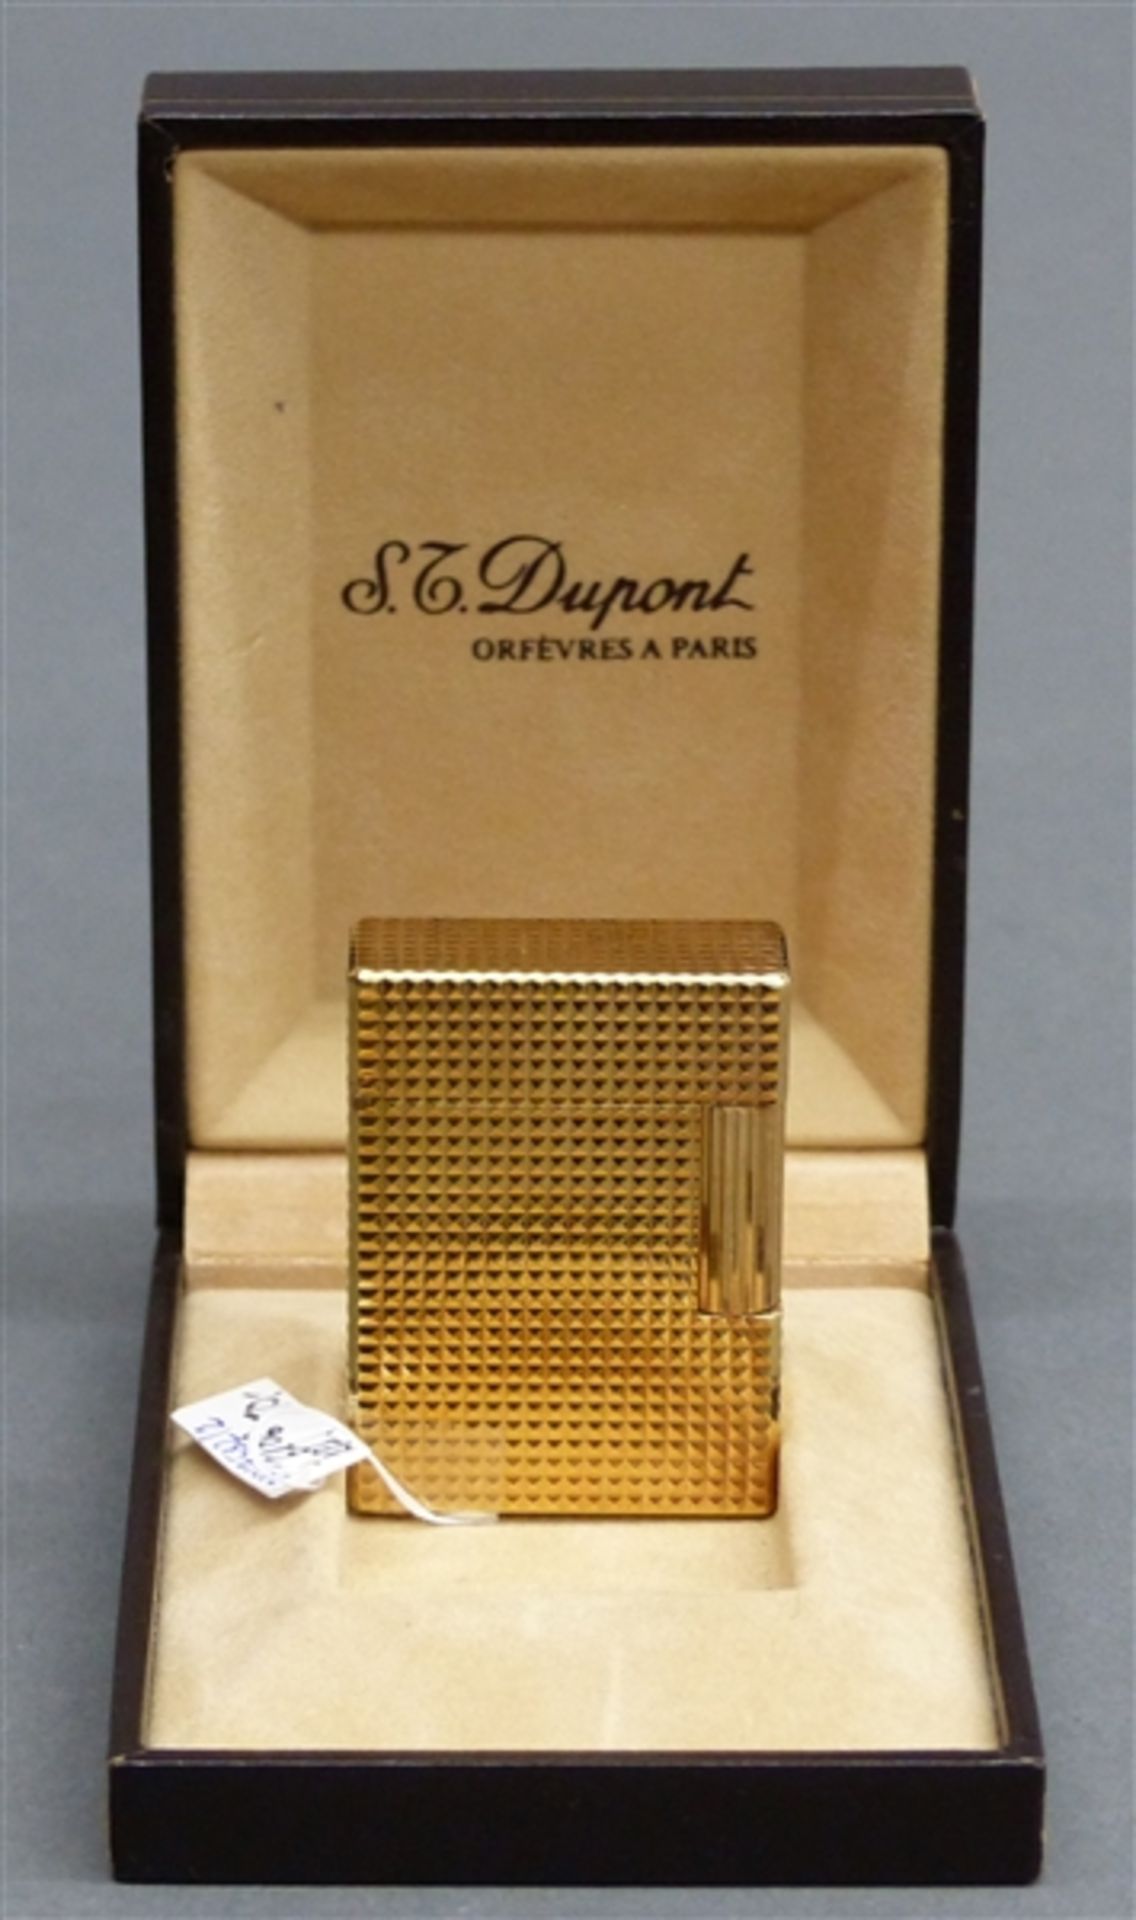 Feuerzeug St. Dupont, Paris, vergoldet, Reliefmuster, im Etui, h 5 cm,